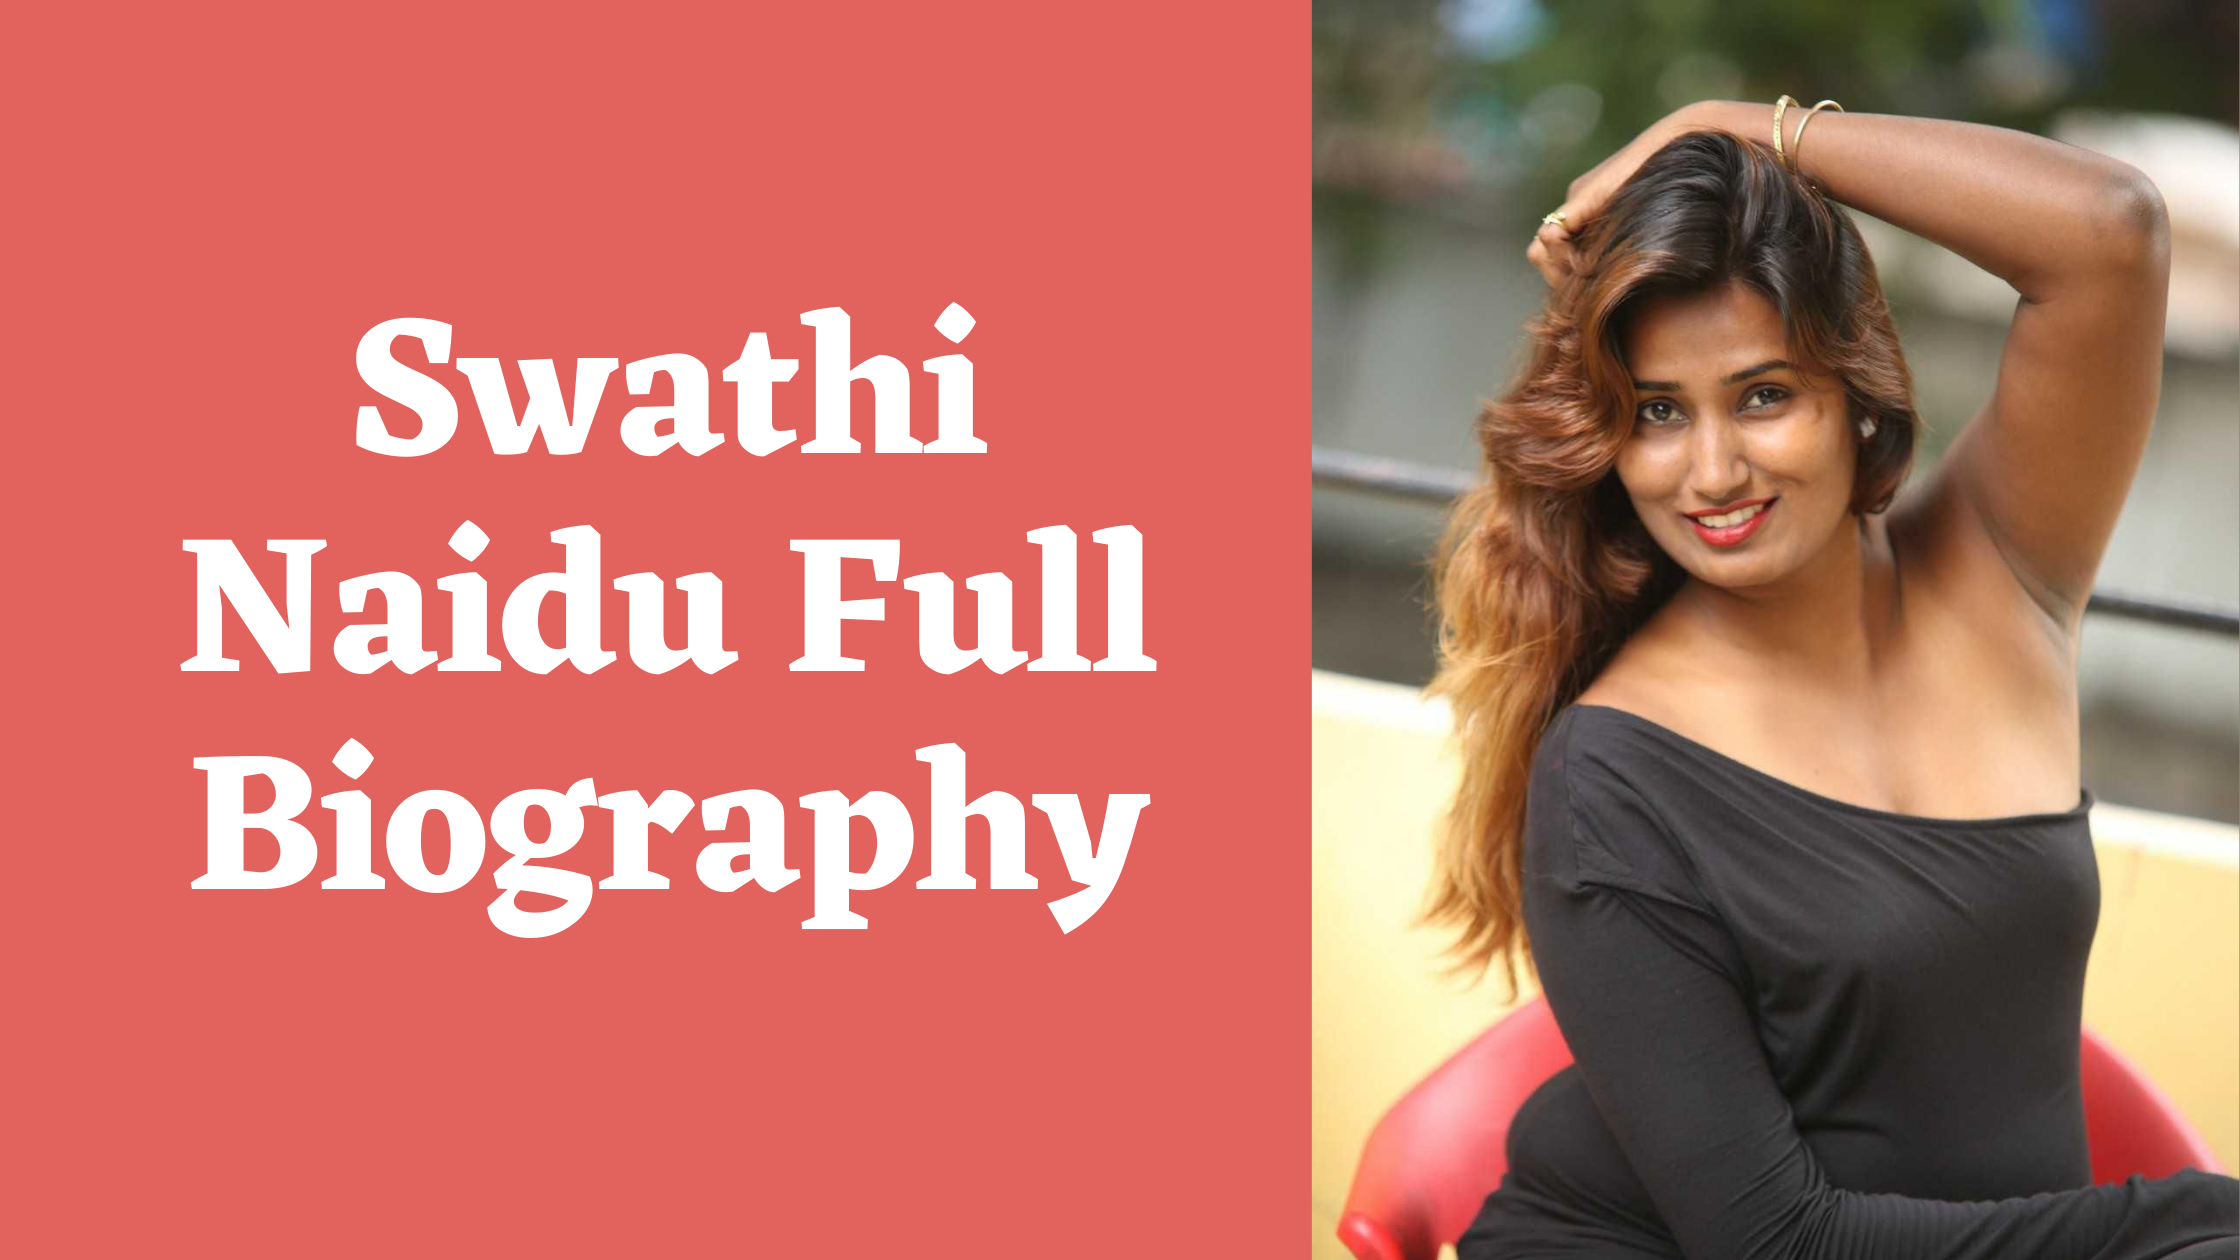 Swathinaiduxxx - Swathi Naidu Hot Videos, Wiki, Age, Husband, Net Worth & Parents